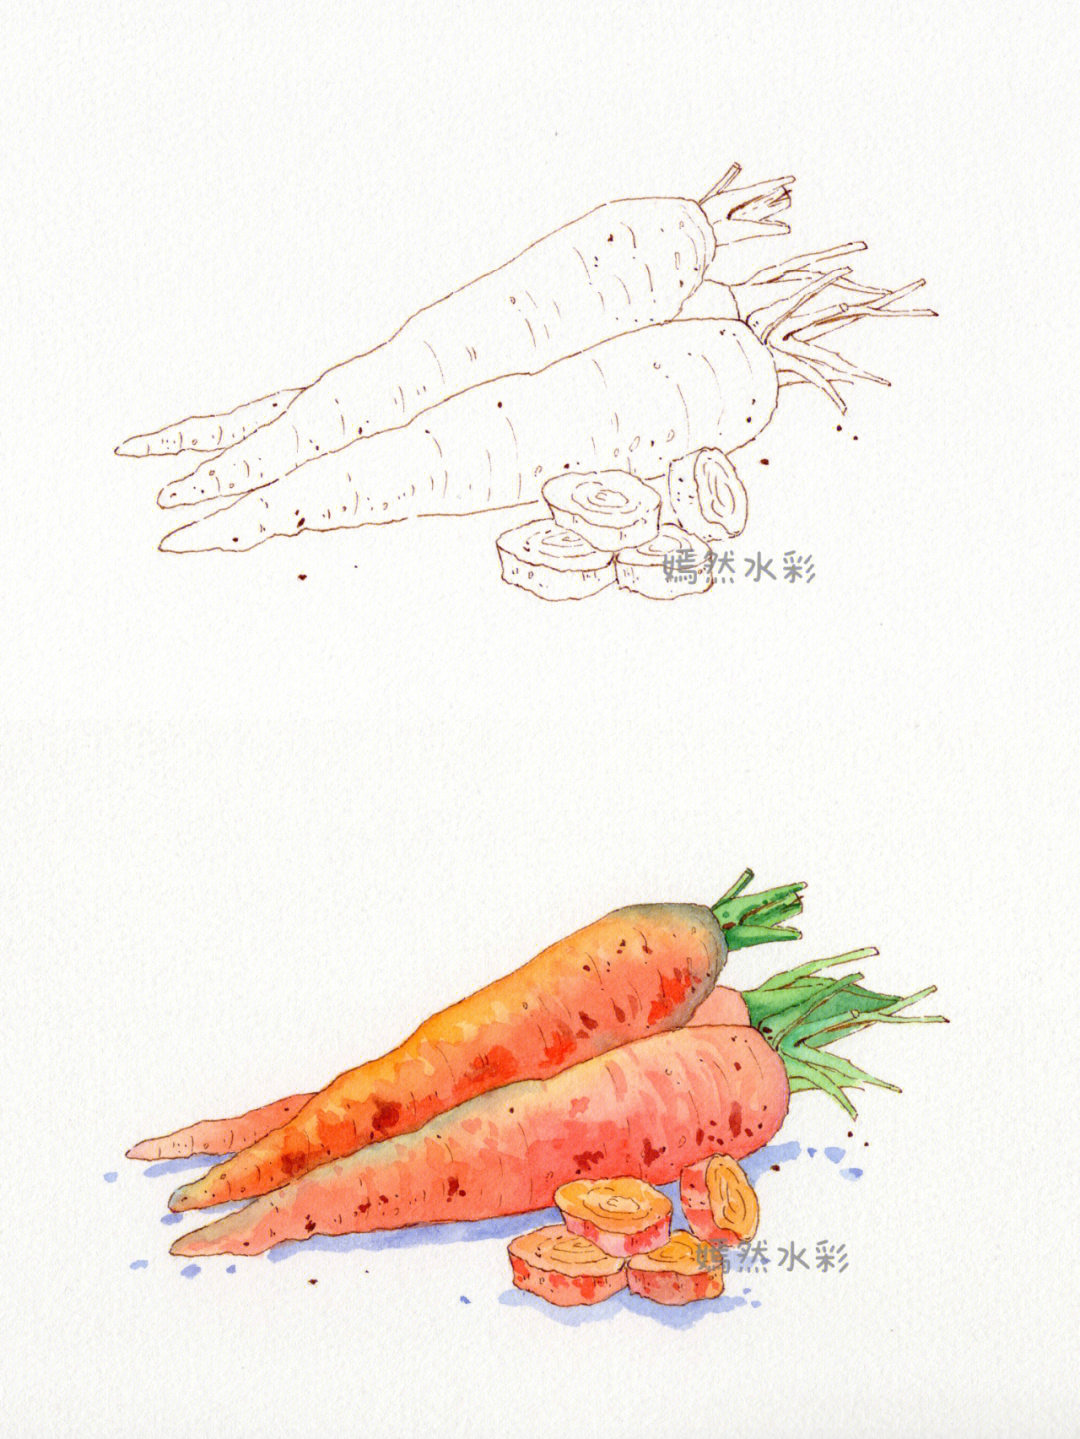 其实画出来色彩还是比较柔和的一根小小的胡萝卜,各种色彩融合,还是挺